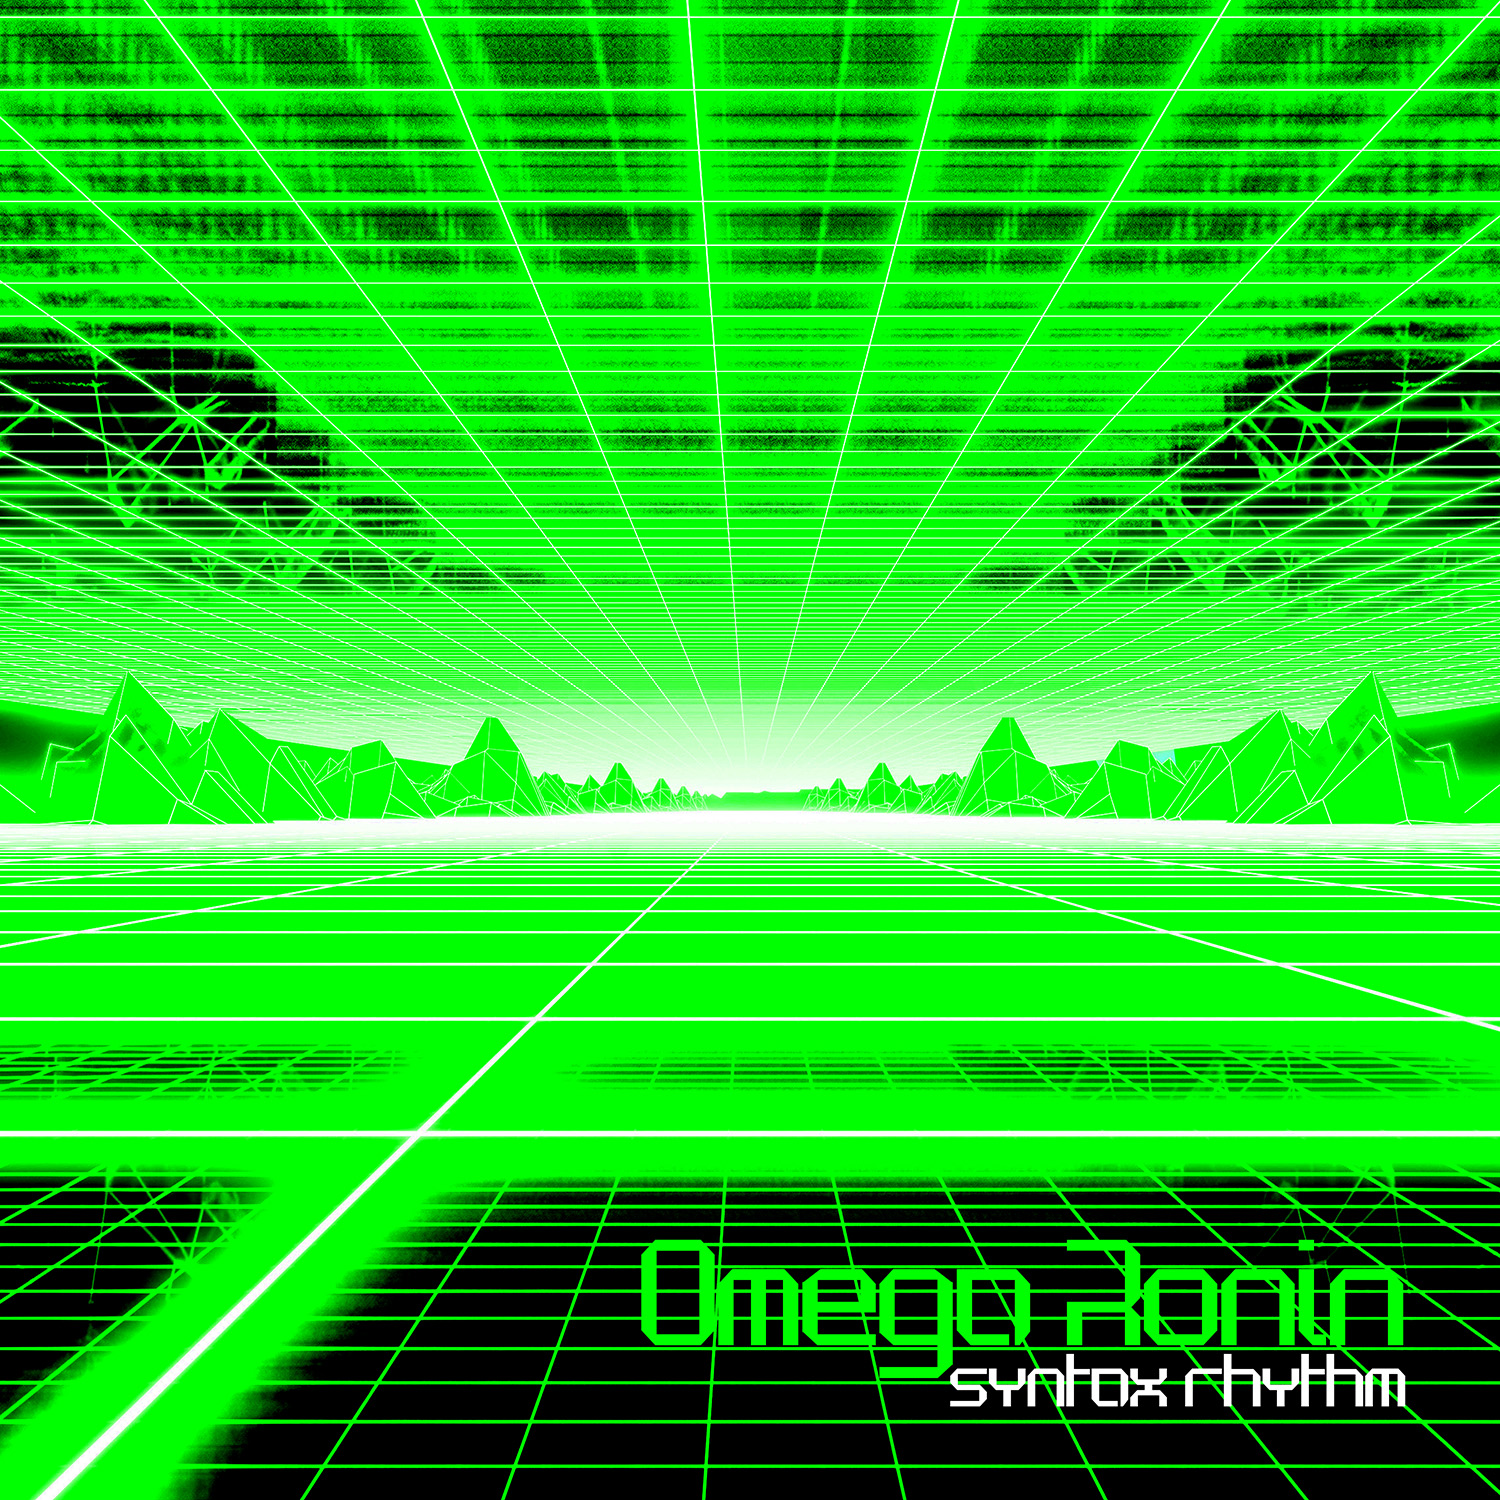 Omega Ronin: Syntax Rhythm